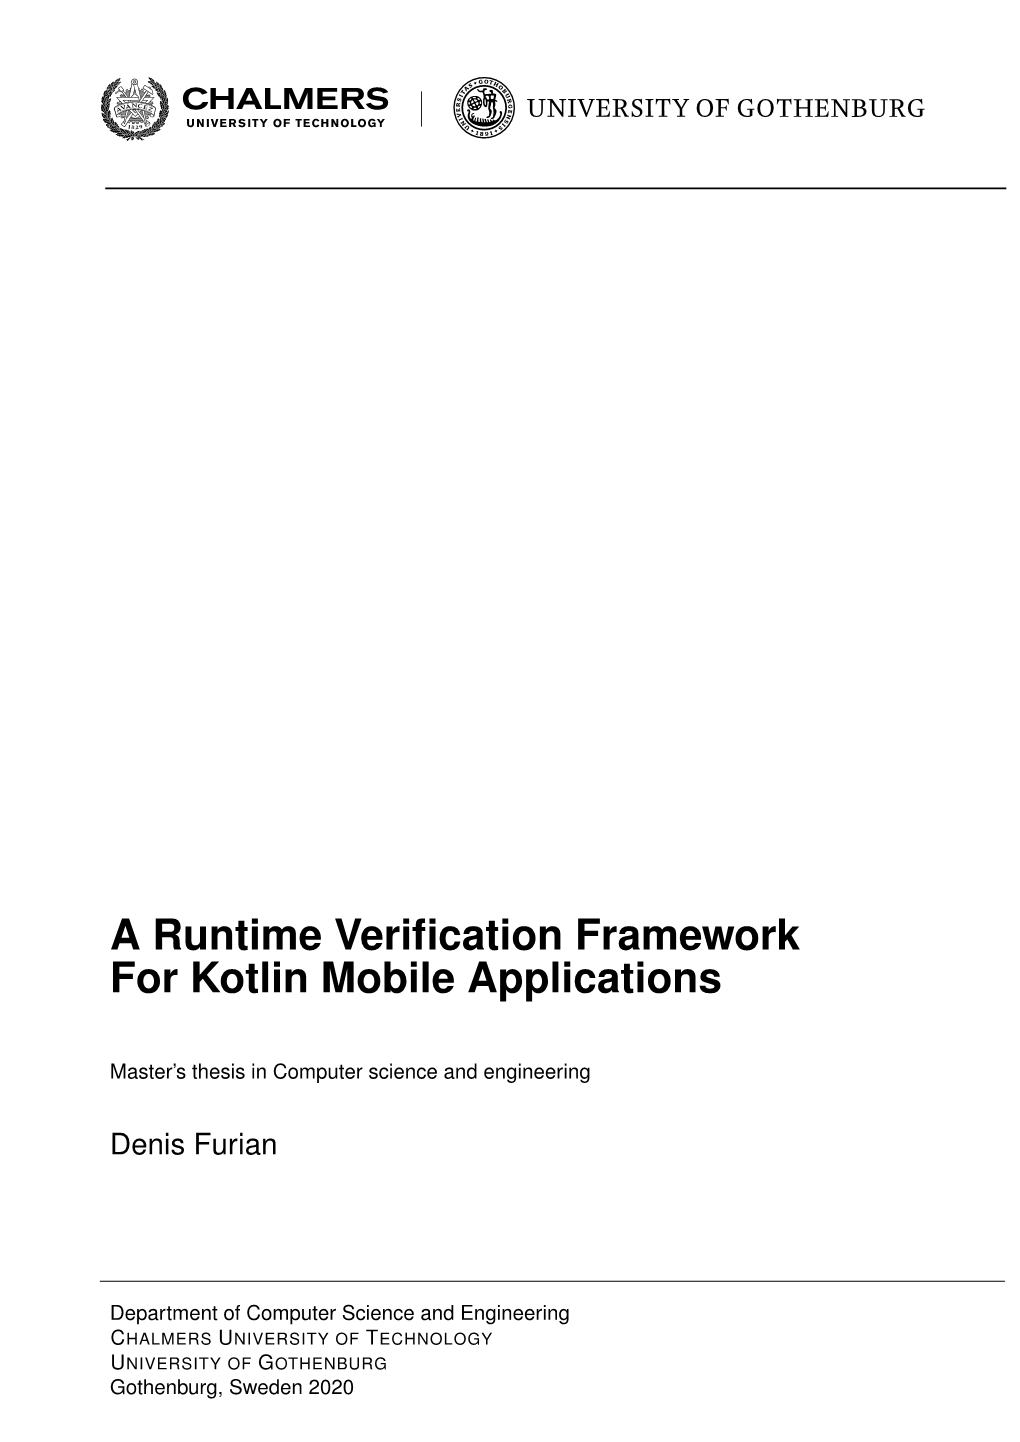 A Runtime Verification Framework for Kotlin Mobile Applications